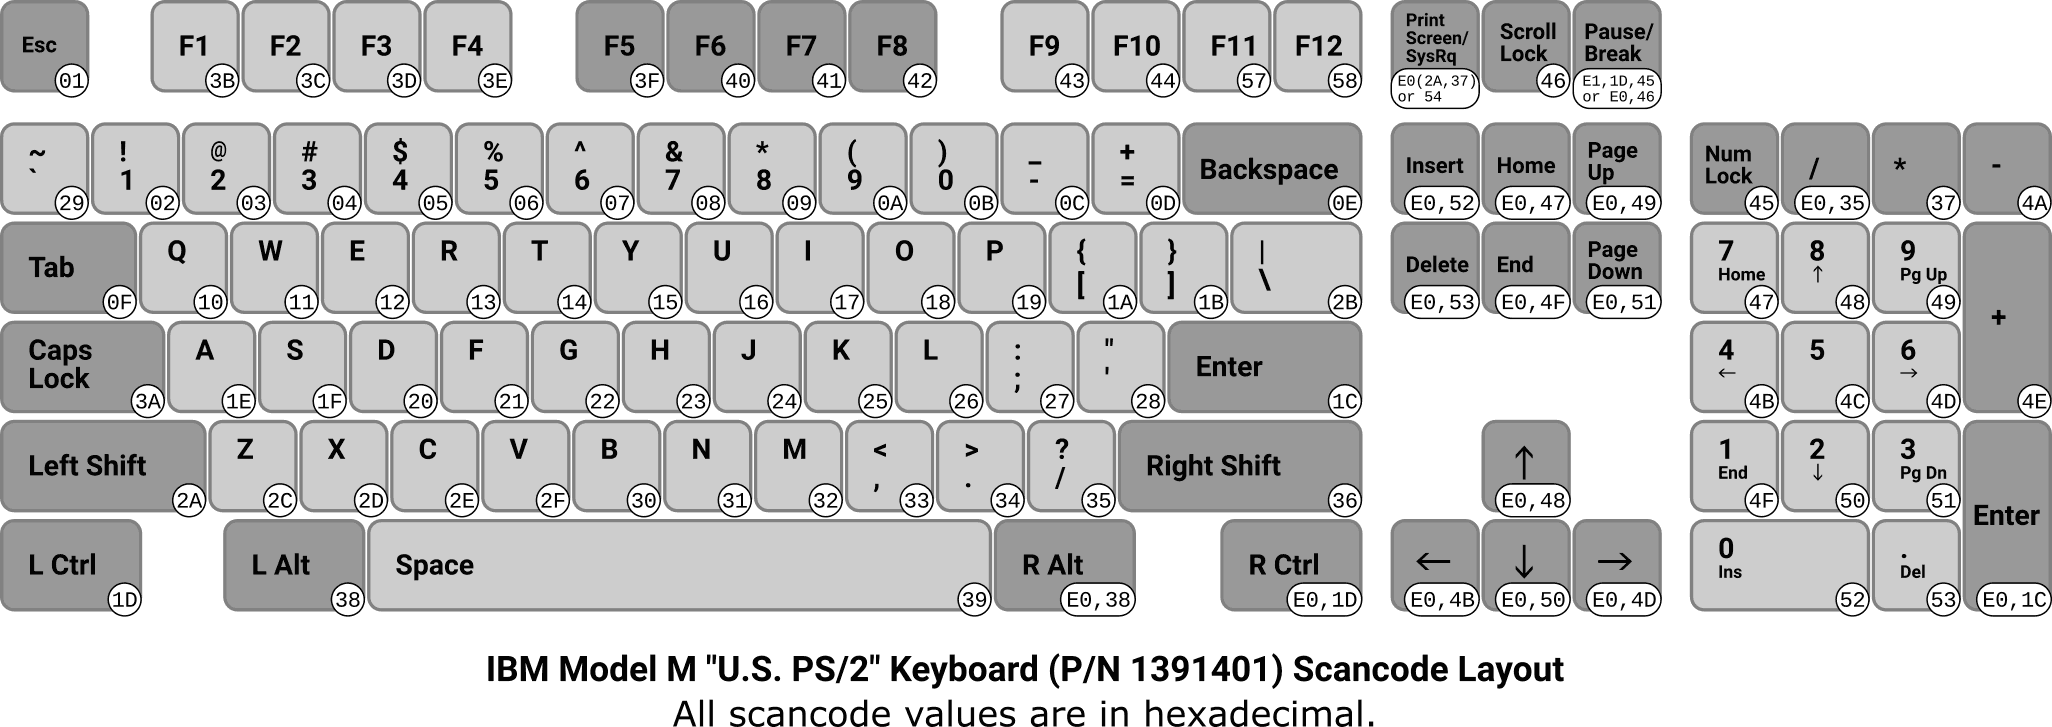 IBM Model M (U.S. PS/2) keyboard scancode layout.